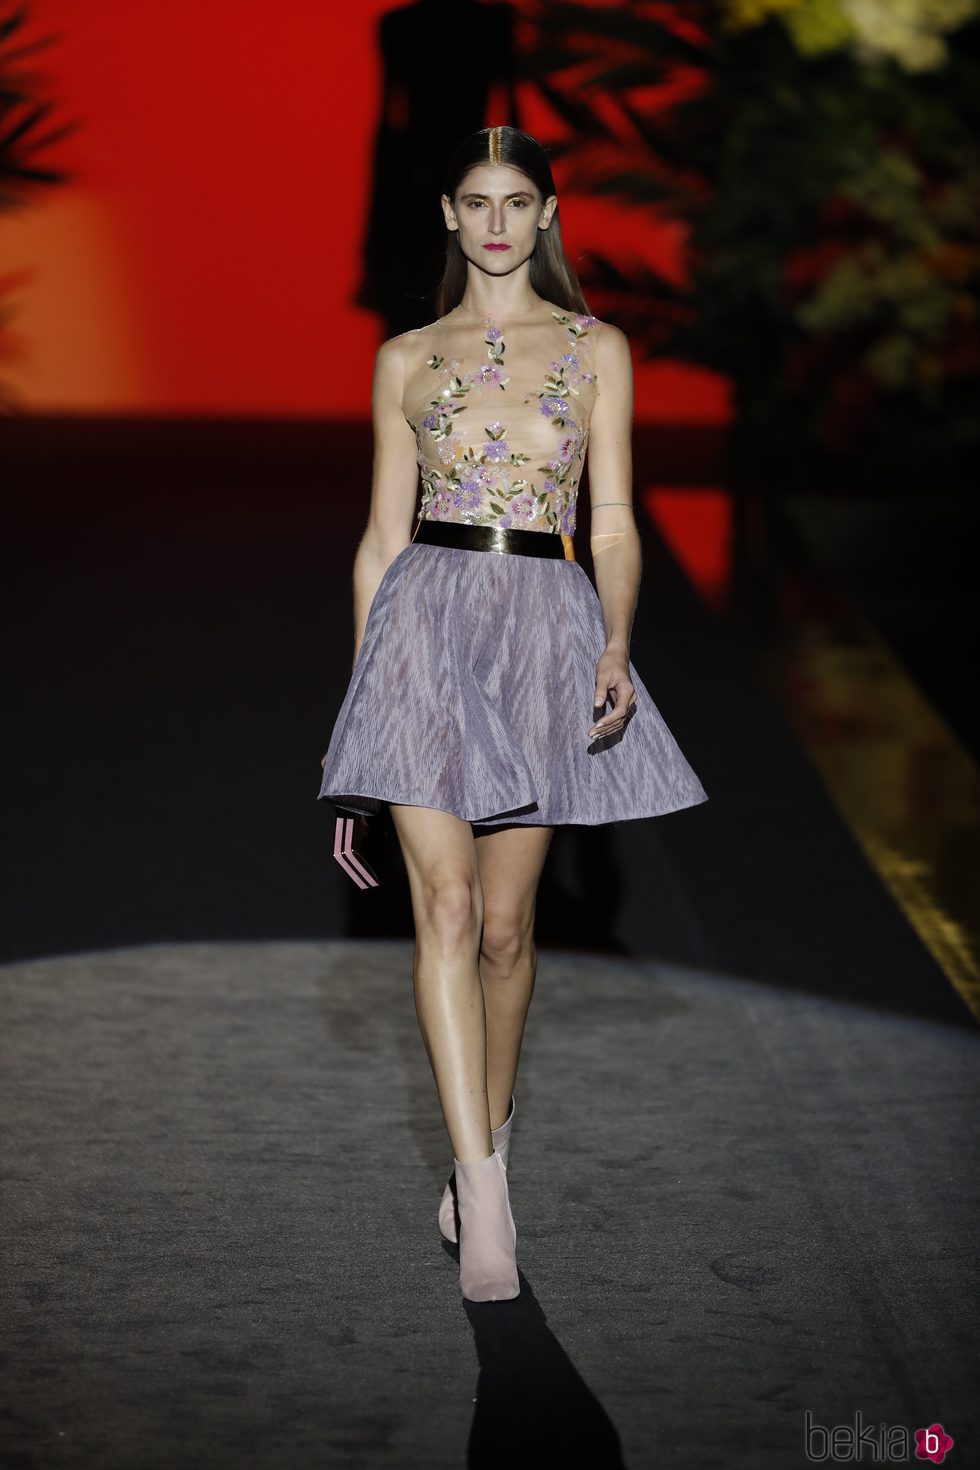 Vestido corto con transparencias de Hannibal Laguna de la coleción Orient Bloom en la Madrid Fashion Week